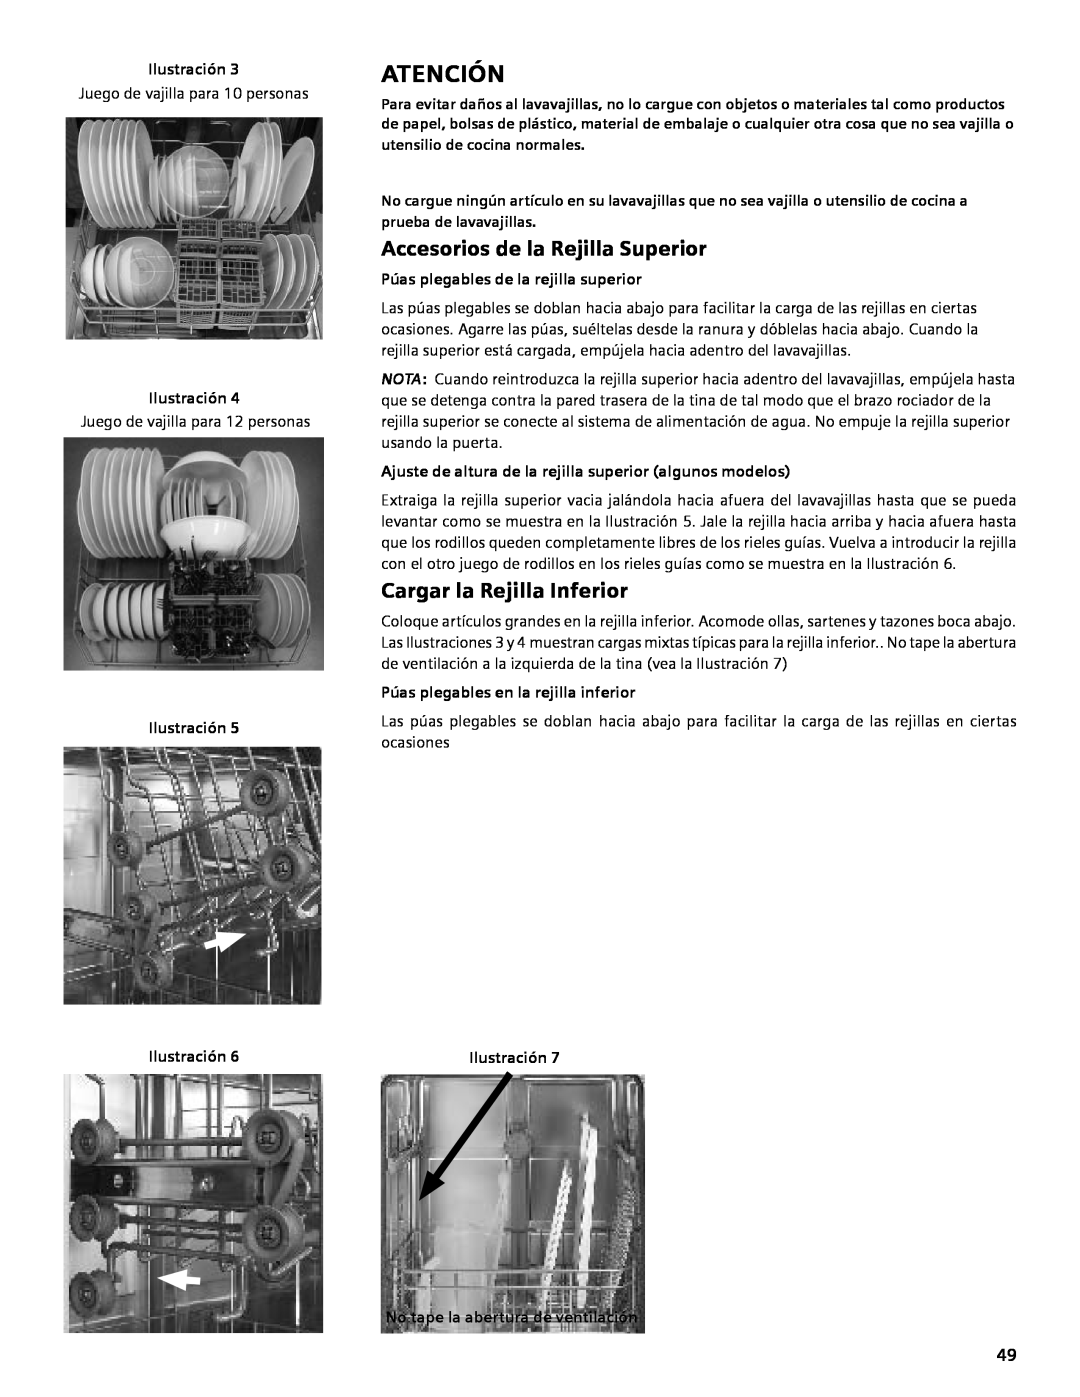 Bosch Appliances SHE4AM, SHE5AM manual Atención, Accesorios de la Rejilla Superior, Cargar la Rejilla Inferior, Ilustración 